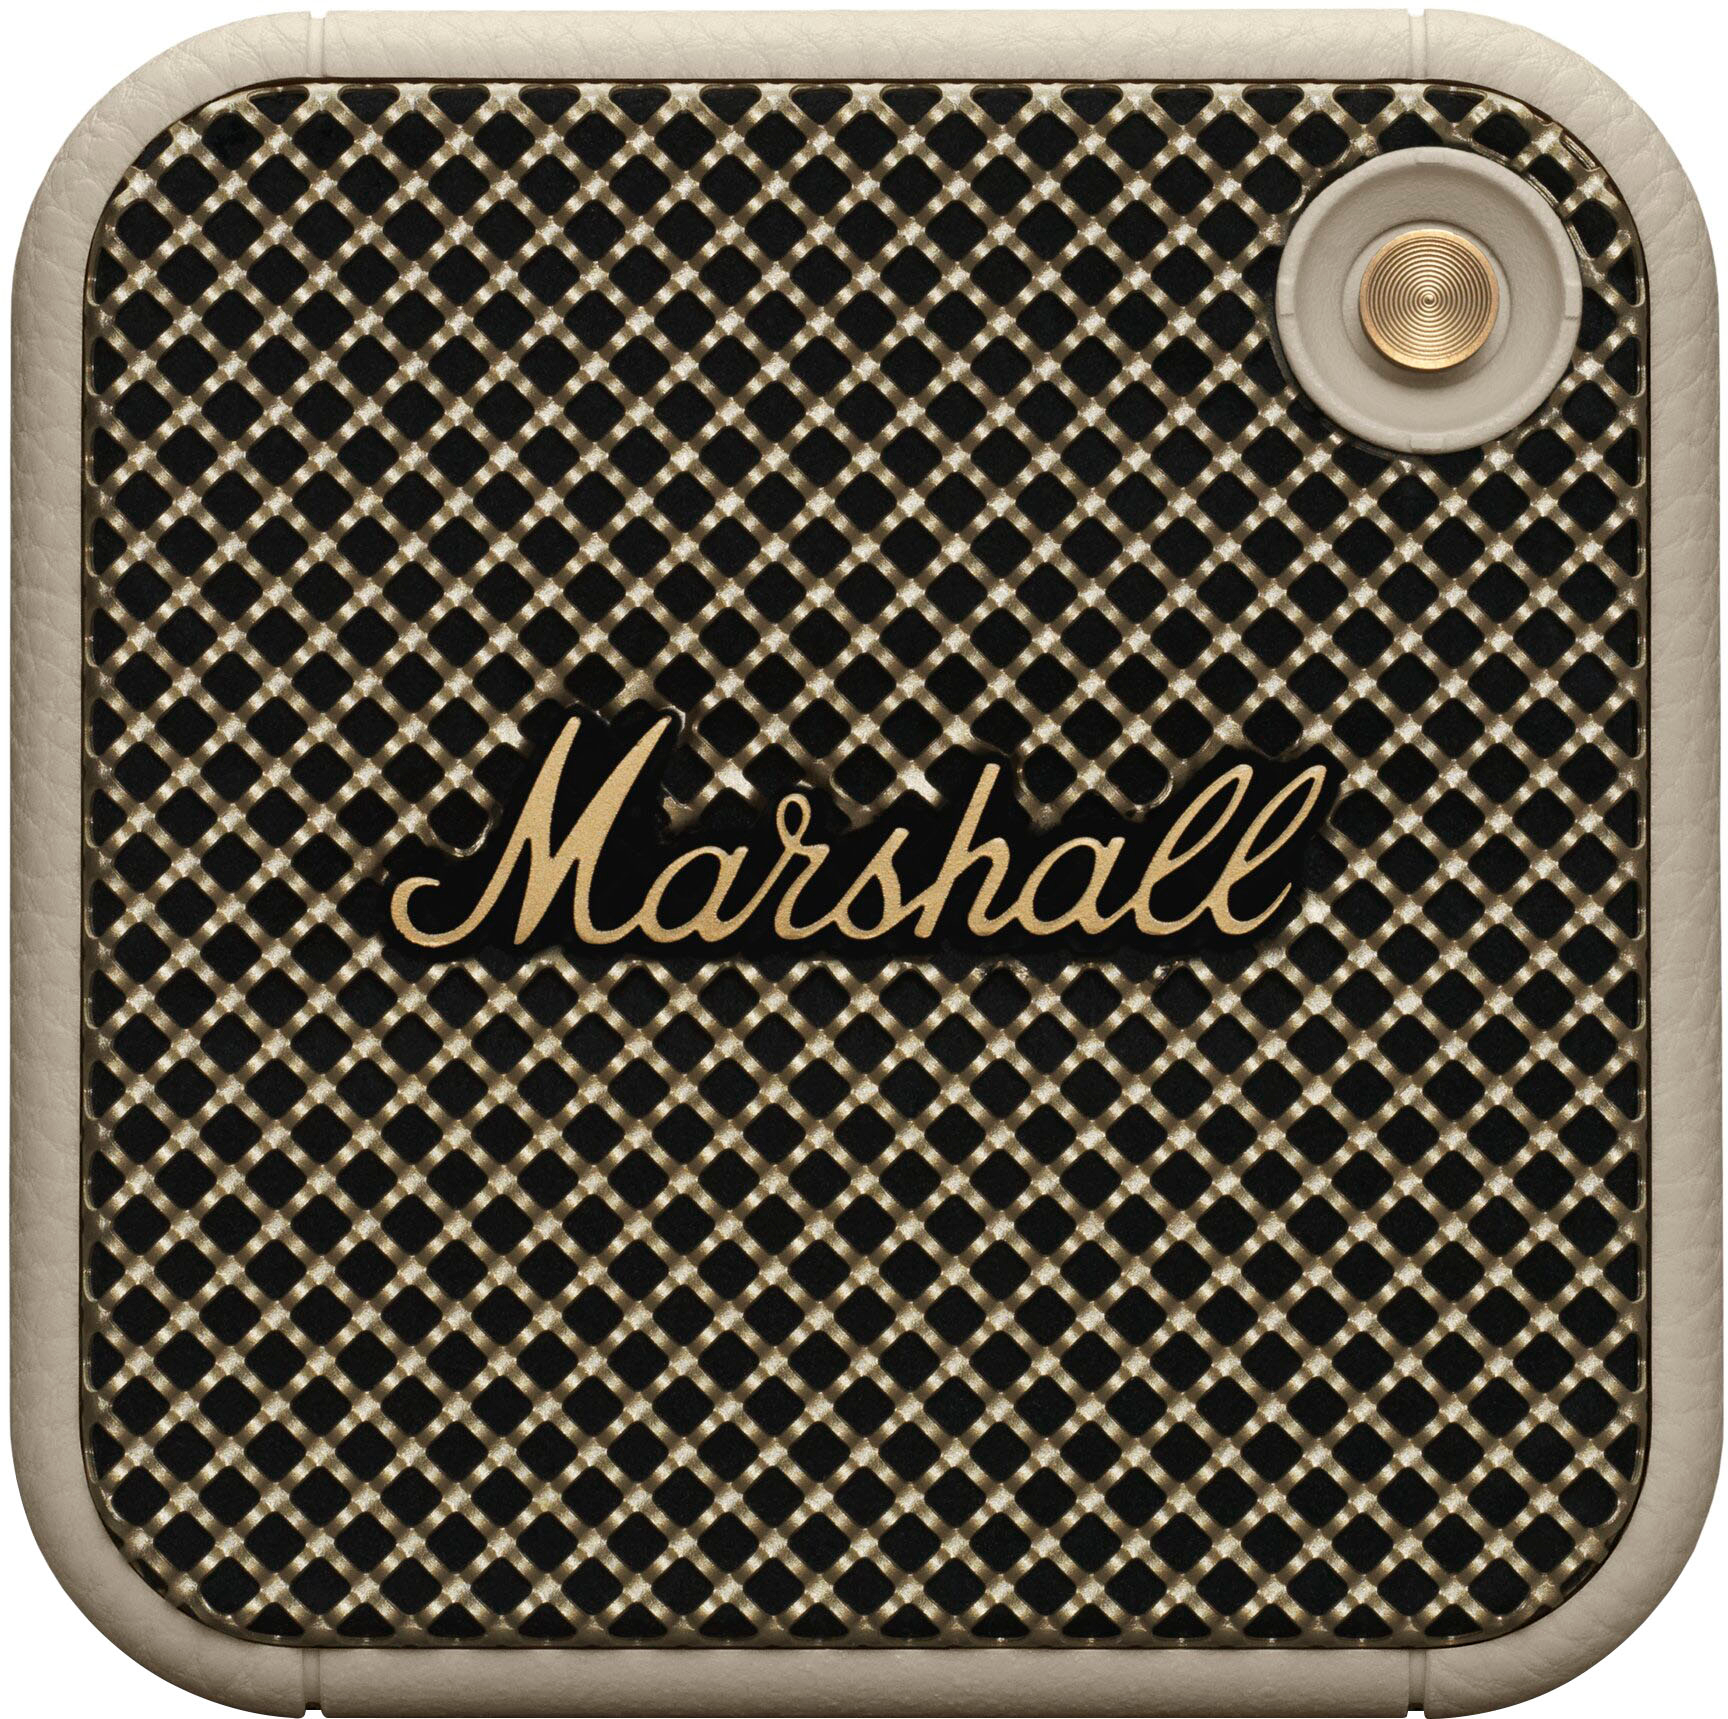 Marshall Middleton Cream Bluetooth Speaker